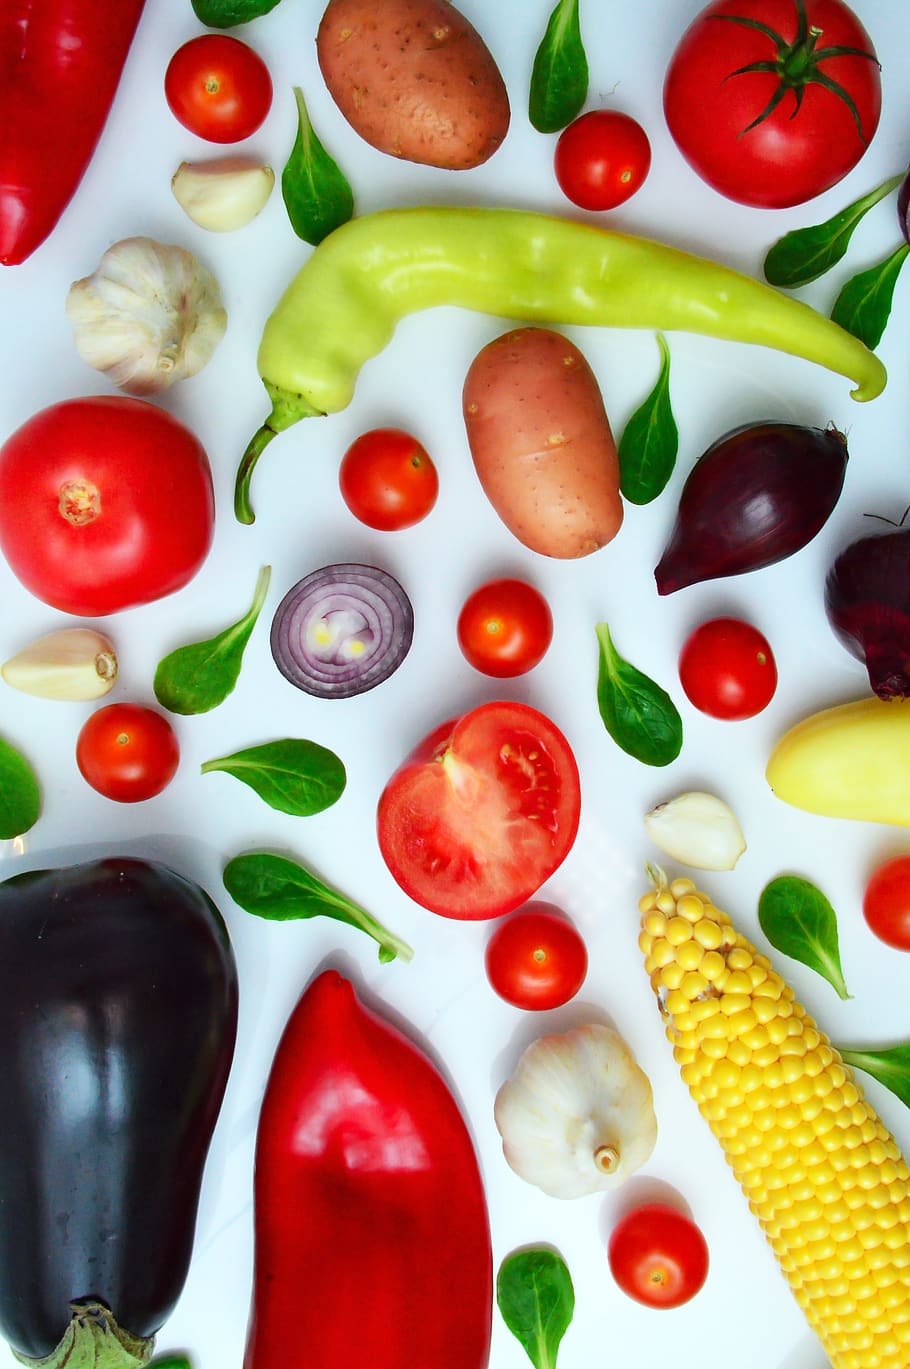 legumes, pimenta, tomate cebola gokhagyma, roxo, vitaminas, vegetariano, comida, saudável, cru, verde